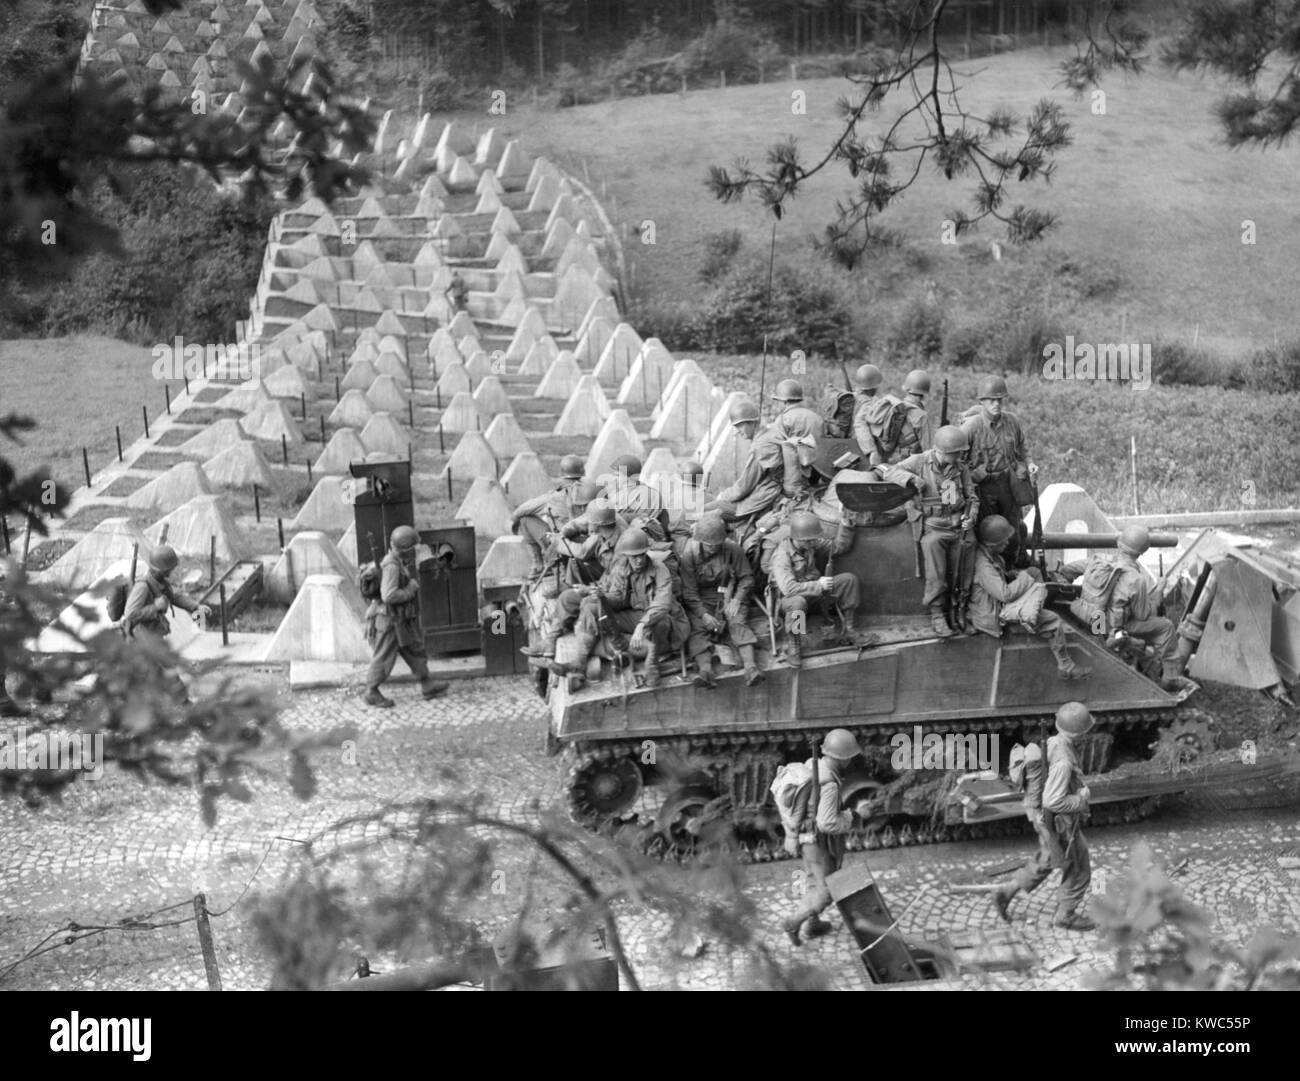 Américains rouler à travers la ligne Siegfried sur un 'tank' bouteur près de Roetgen, Allemagne, le 28 septembre 1944. Roetgen a été la première municipalité allemande il a capturé par les troupes américaines durant la Seconde Guerre mondiale (BSLOC 2  2015 13 67) Banque D'Images